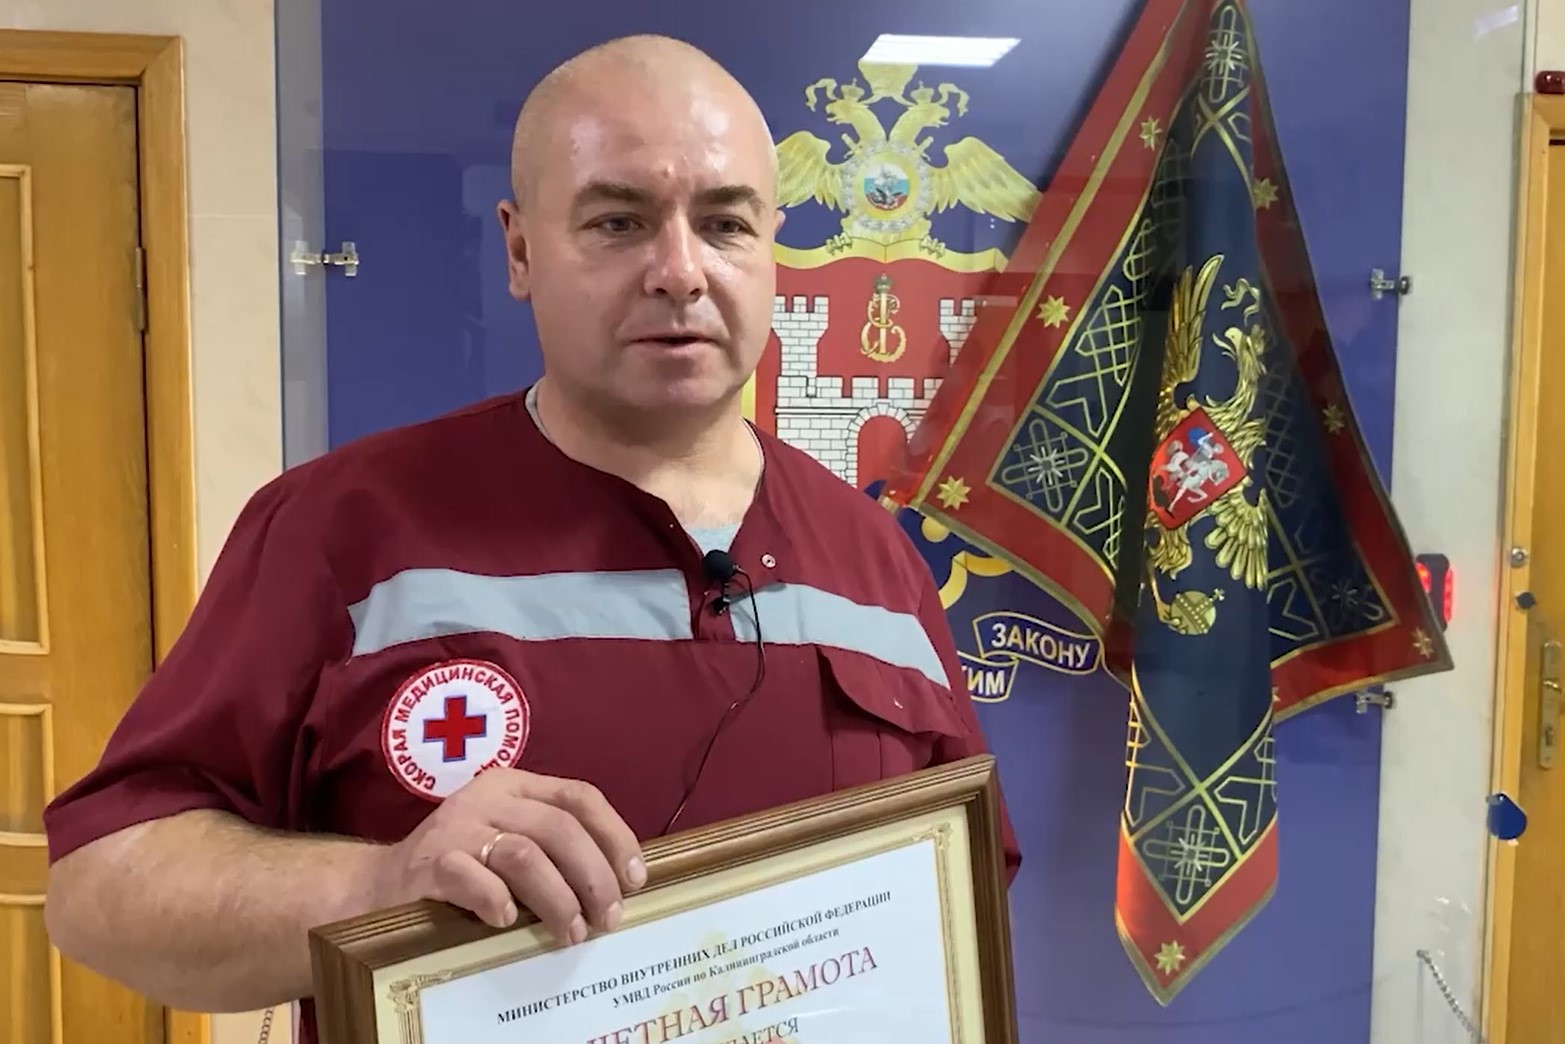 Водителя скорой Зеленоградской ЦРБ наградили за героизм